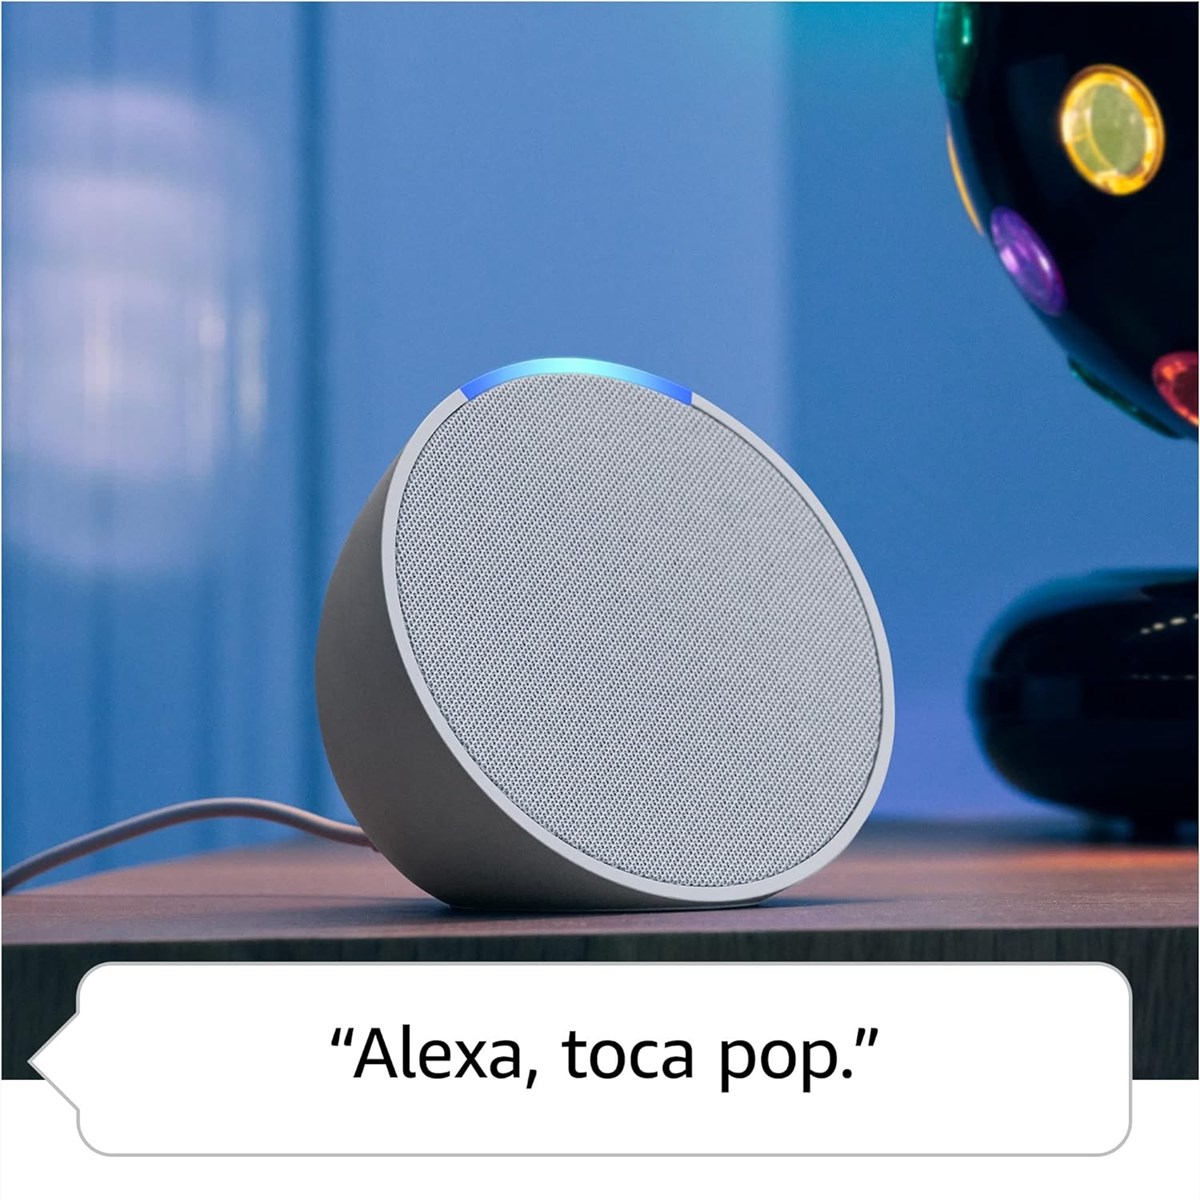 Caixa de Som Inteligente Alexa Echo Pop C2H4R9 Wi-Fi Bluetooth